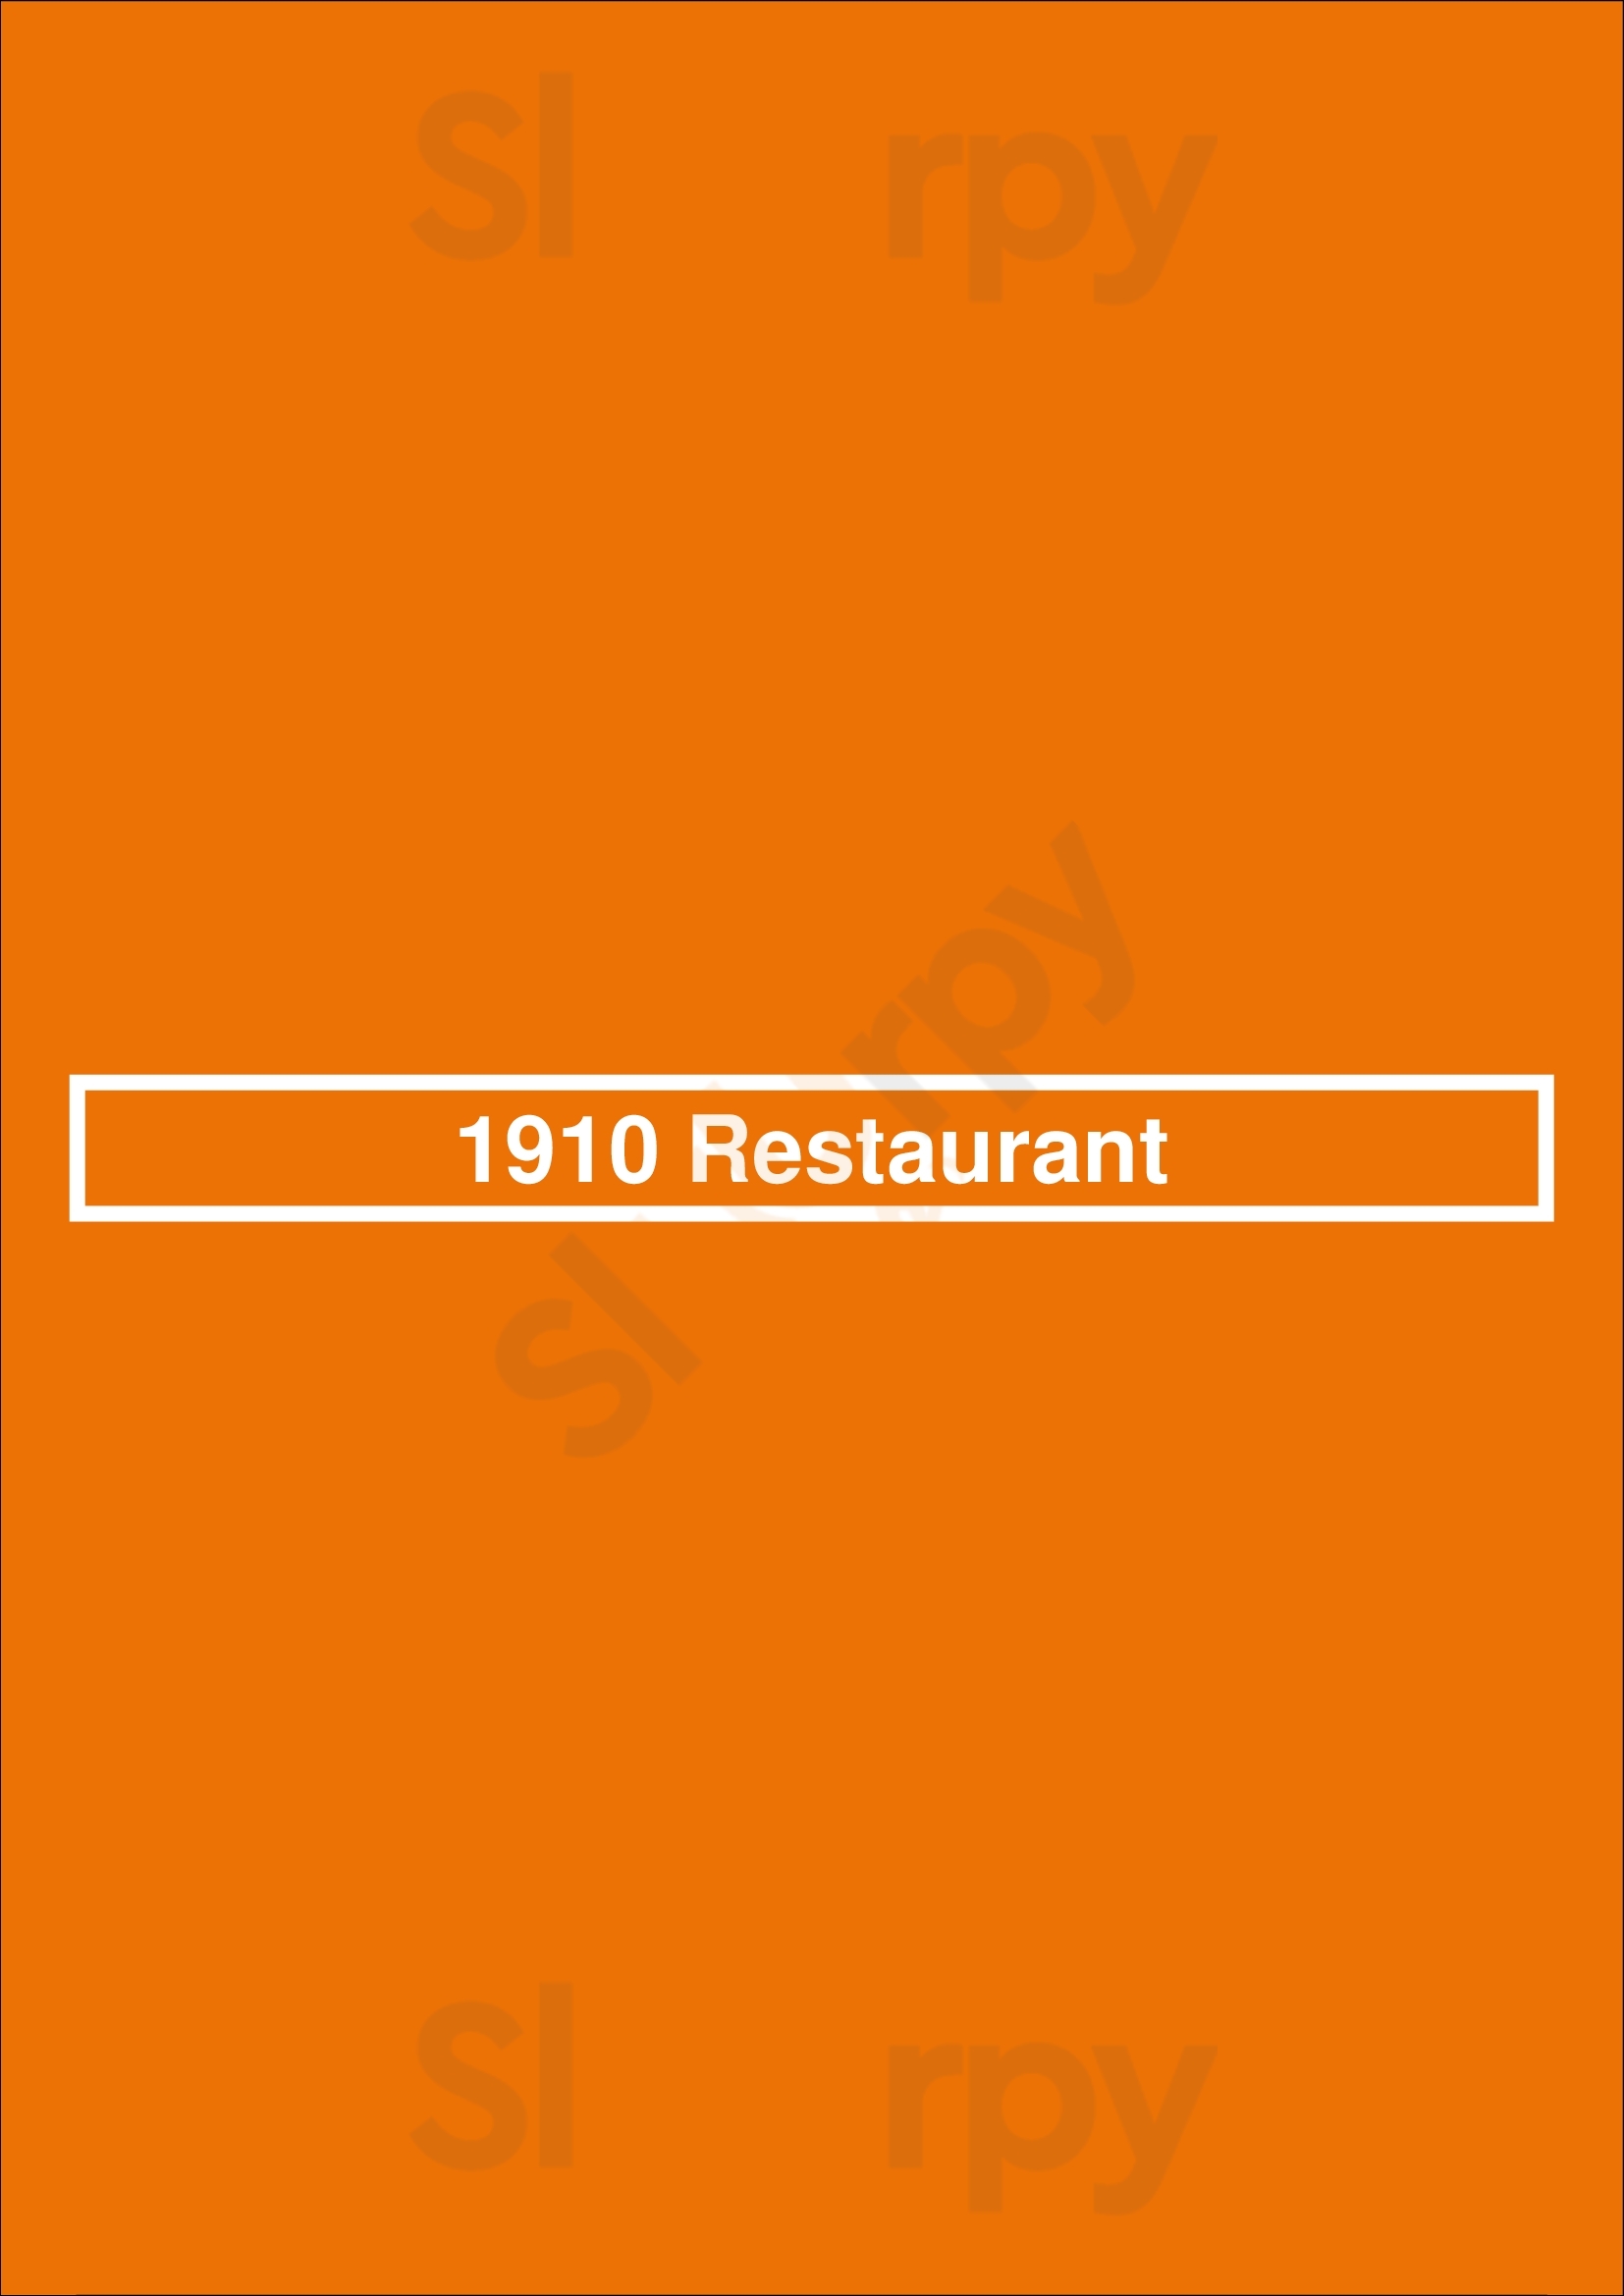 1910 Restaurant Eindhoven Menu - 1